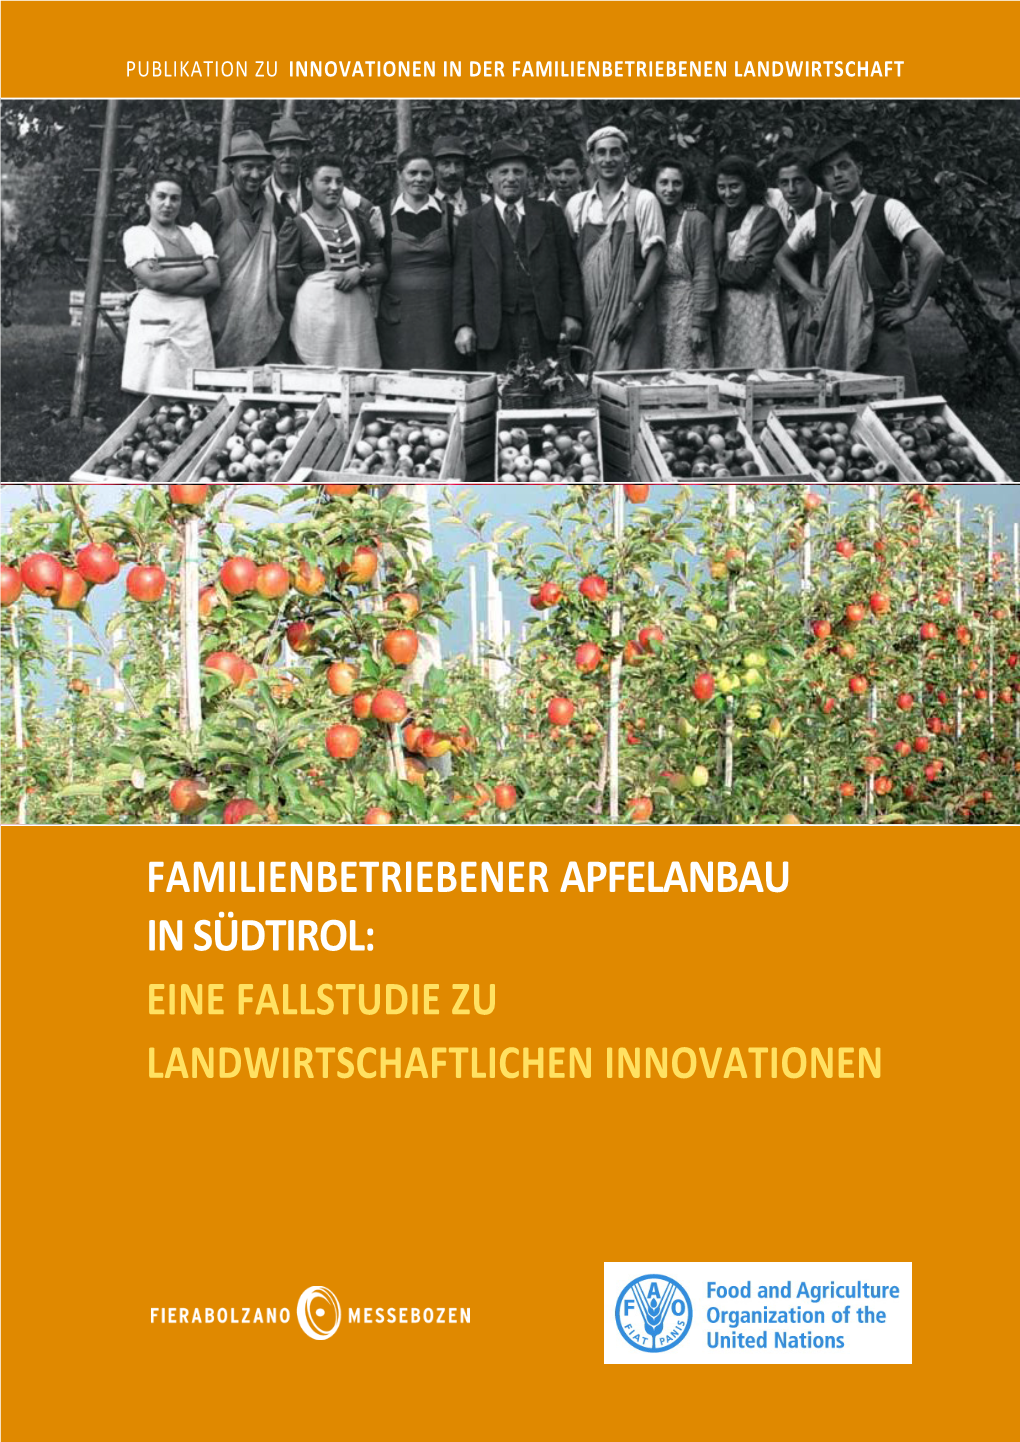 Familienbetriebener Apfelanbau in Südtirol: Eine Fallstudie Zu Landwirtschaftlichen Innovationen